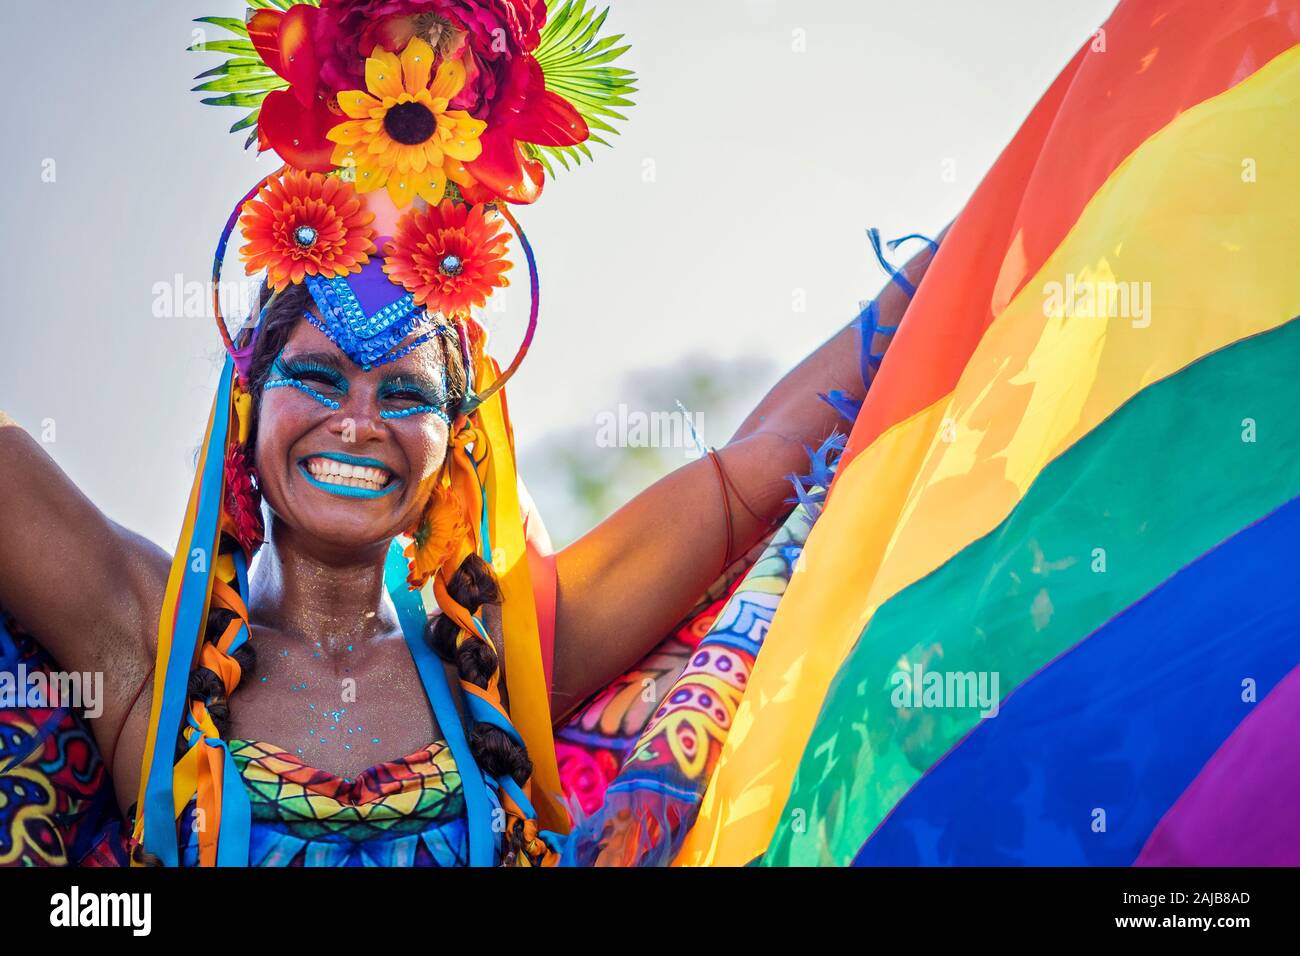 Hermosa mujer brasileña de ascendencia africana vistiendo coloridos trajes y sonriente durante el Carnaval fiesta callejera en Río de Janeiro, Brasil. Foto de stock